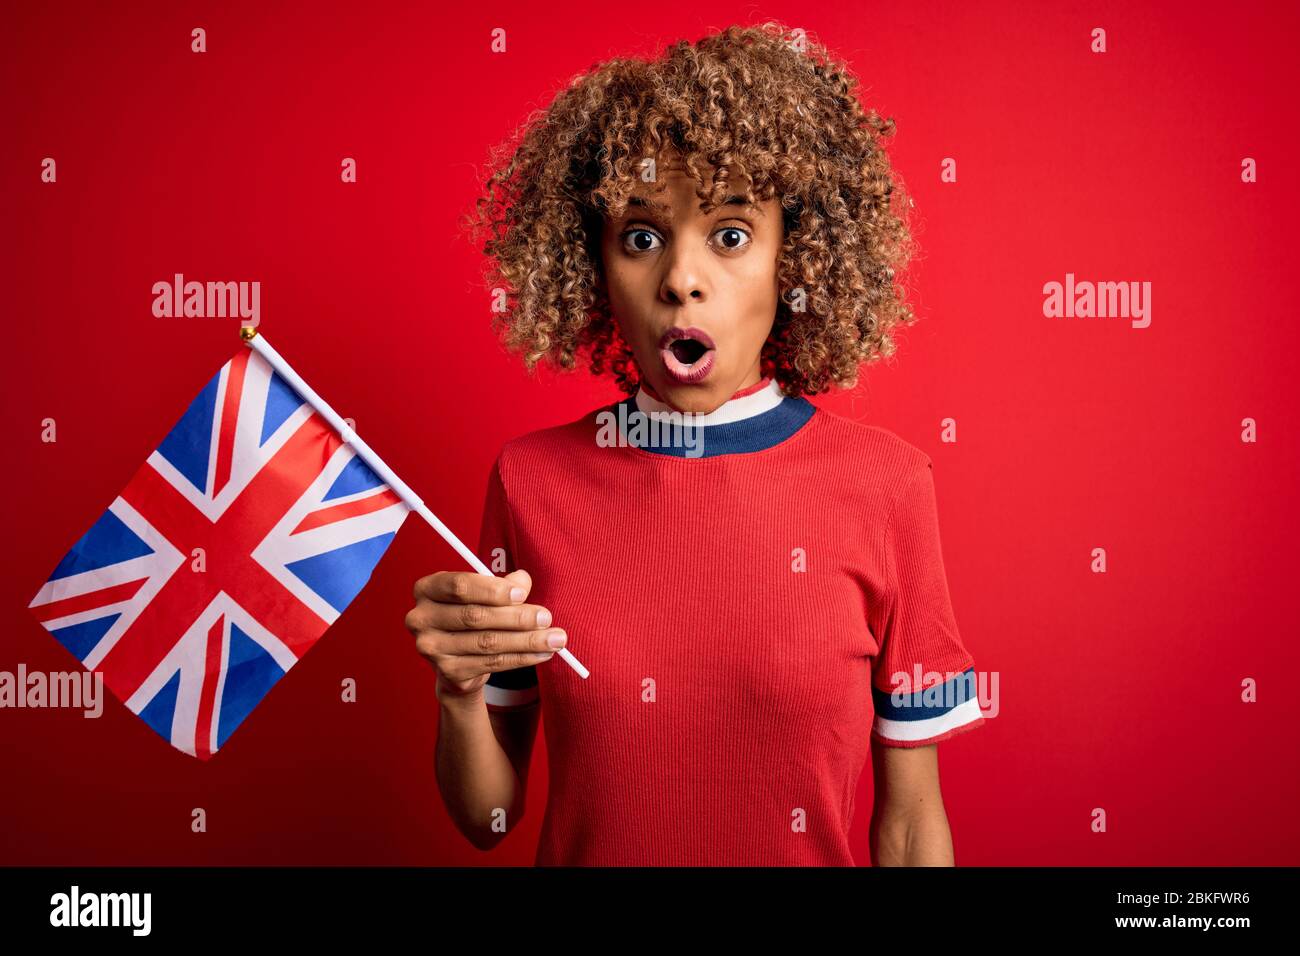 Giovane maledetta afro-americana che tiene la bandiera britannica per celebrare il referendum sulla brexit spaventata in uno shock con un volto a sorpresa, impaurita ed eccitata dalla paura ex Foto Stock